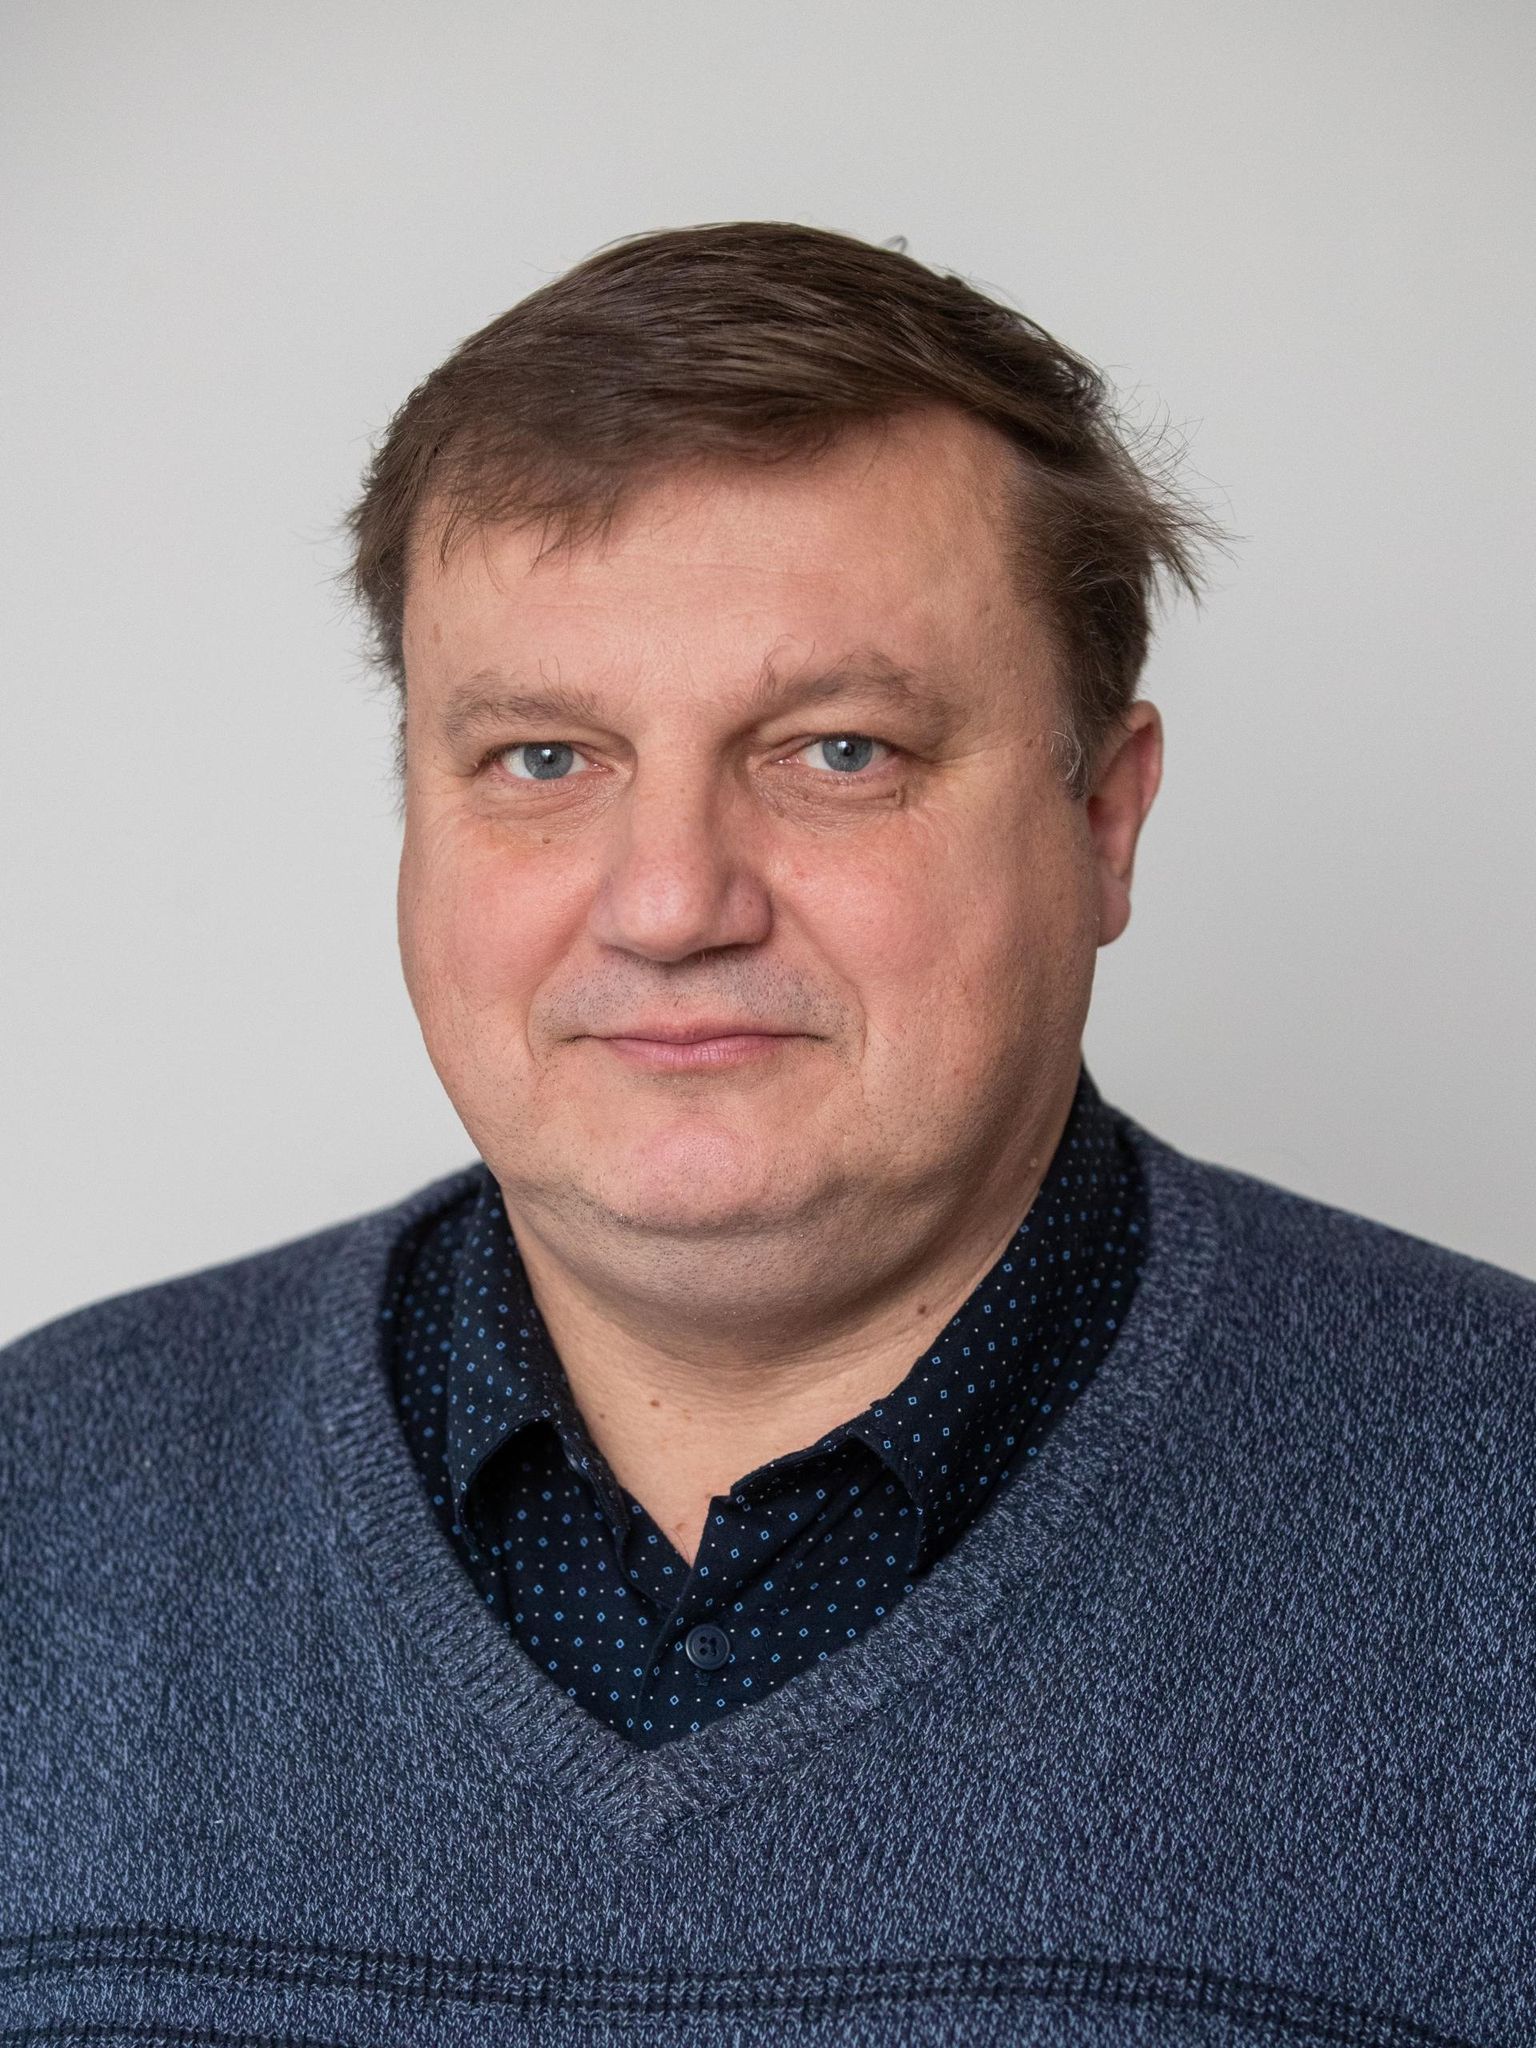 Soome-ugri hõimuliikumise edendaja Jaak Prozes.